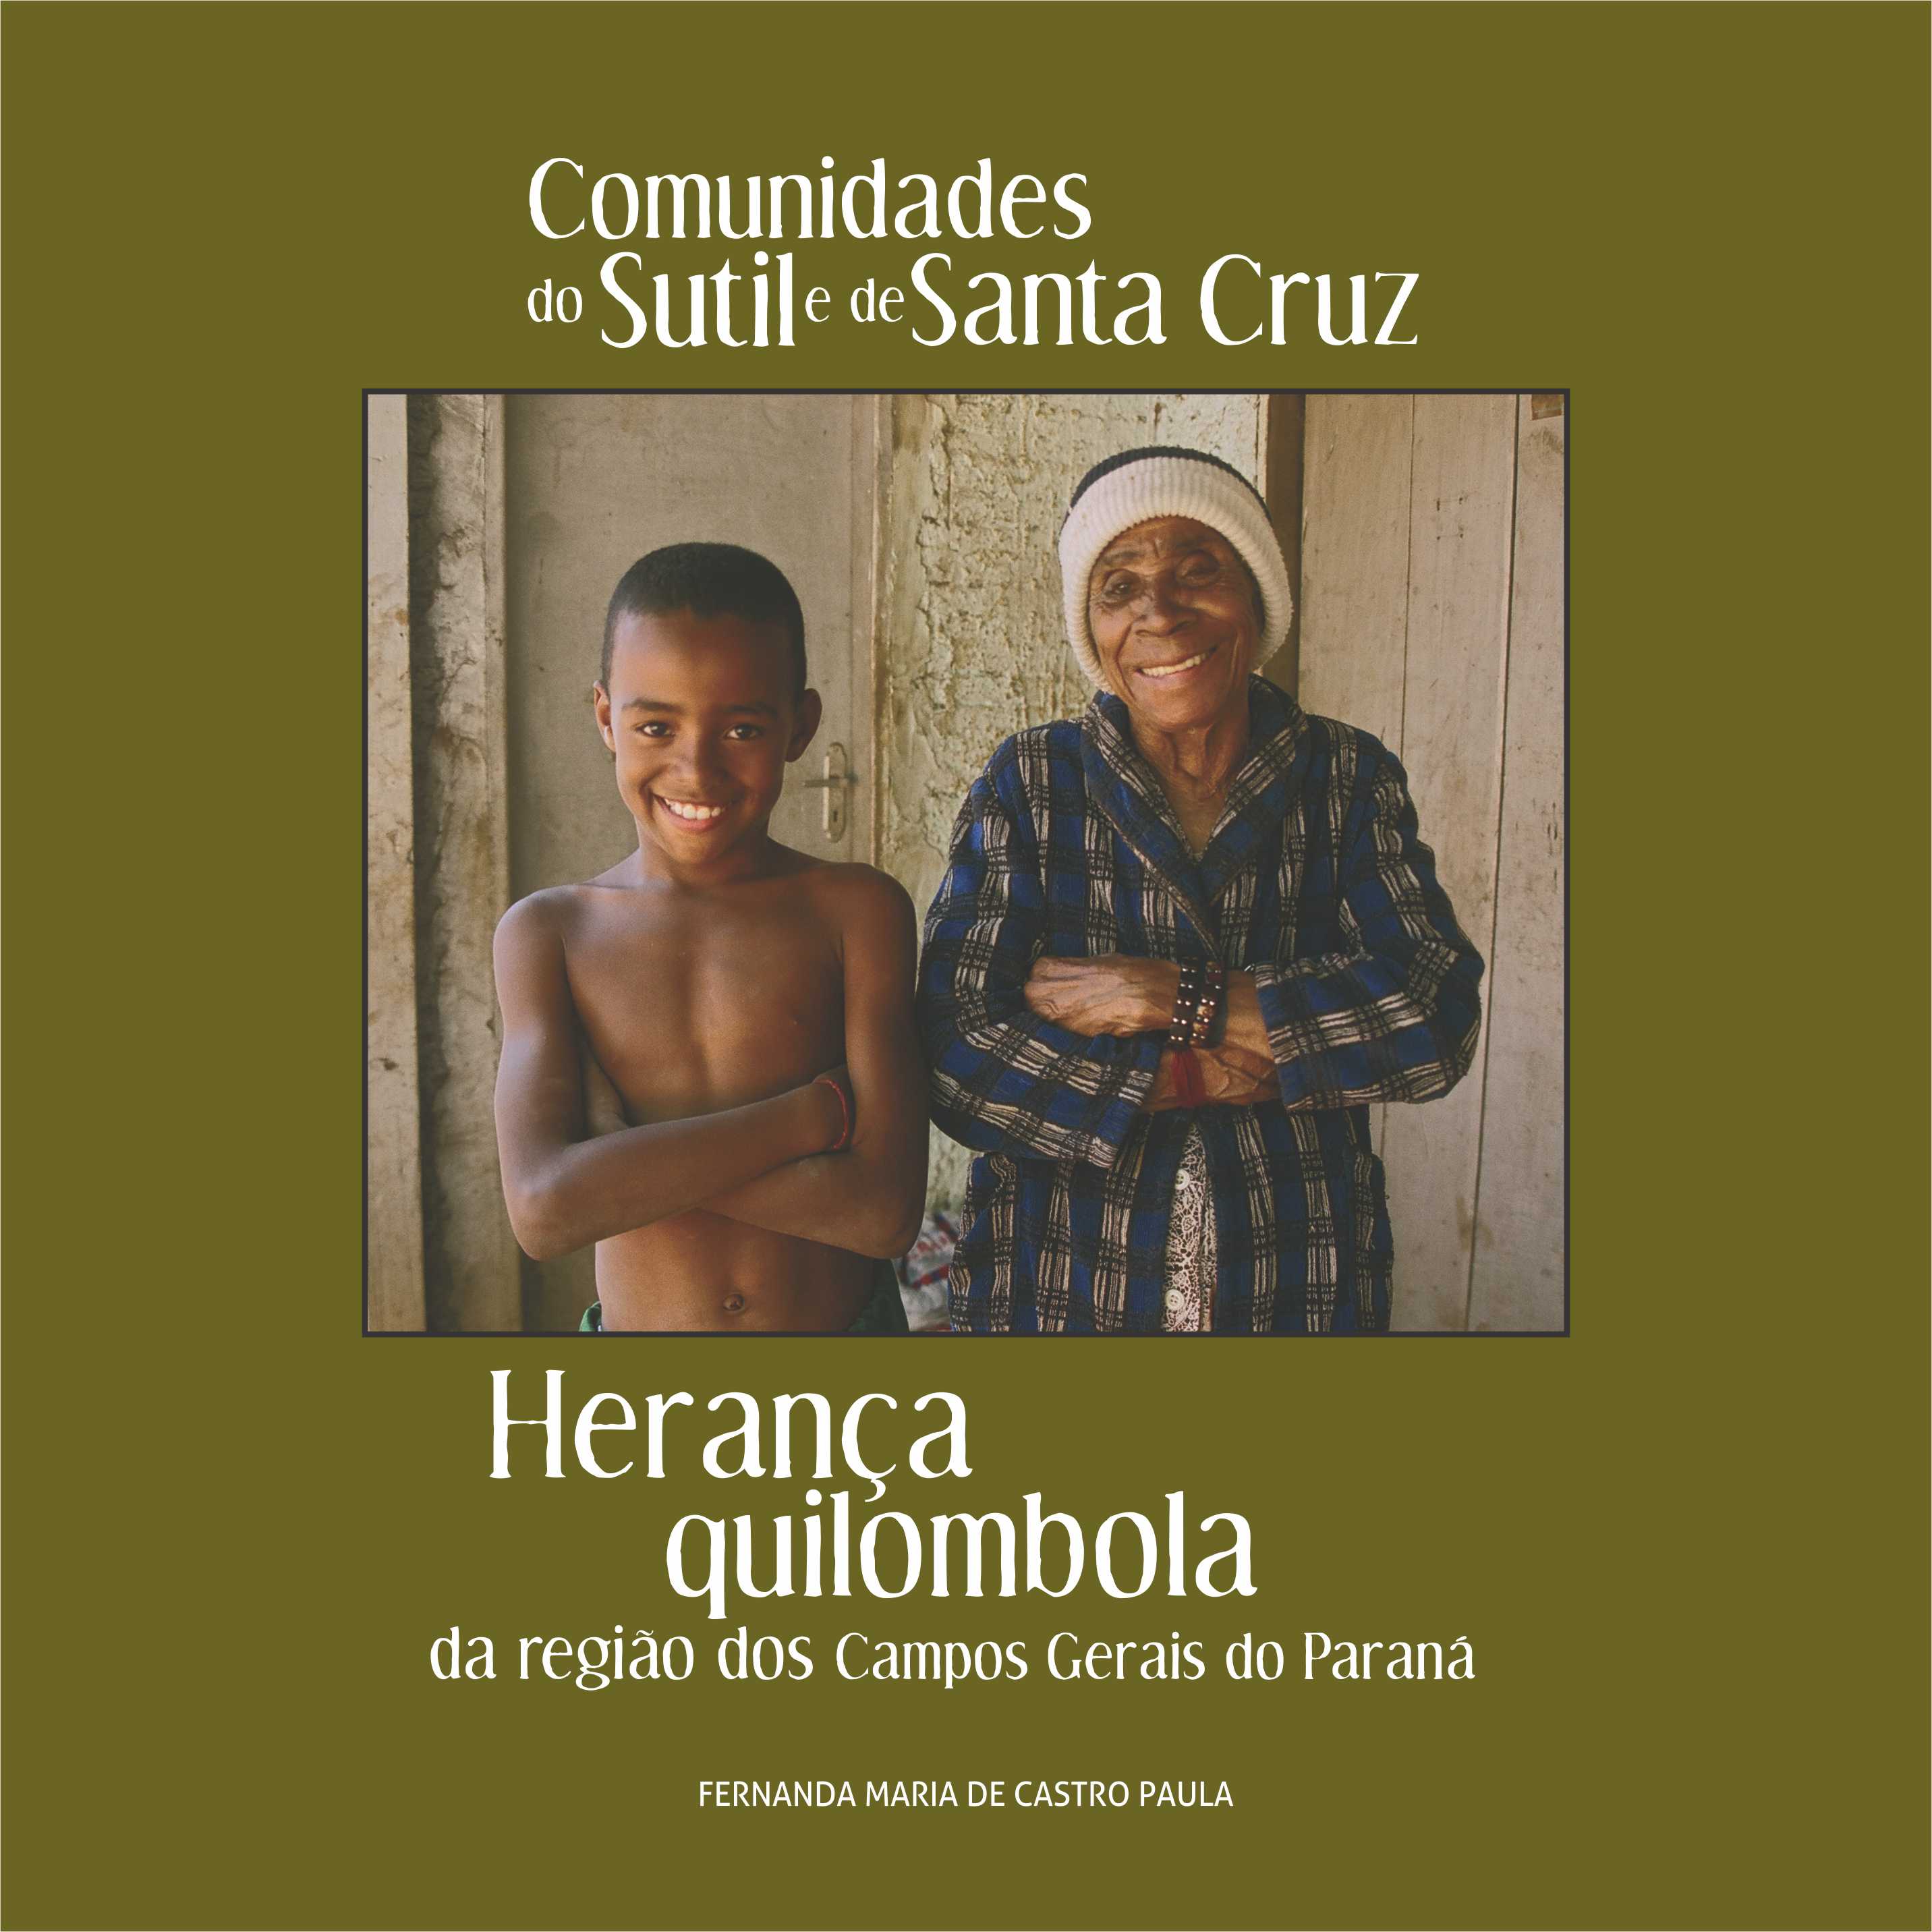 Capa do Livro "Comunidades do Sutil e de Santa Cruz"